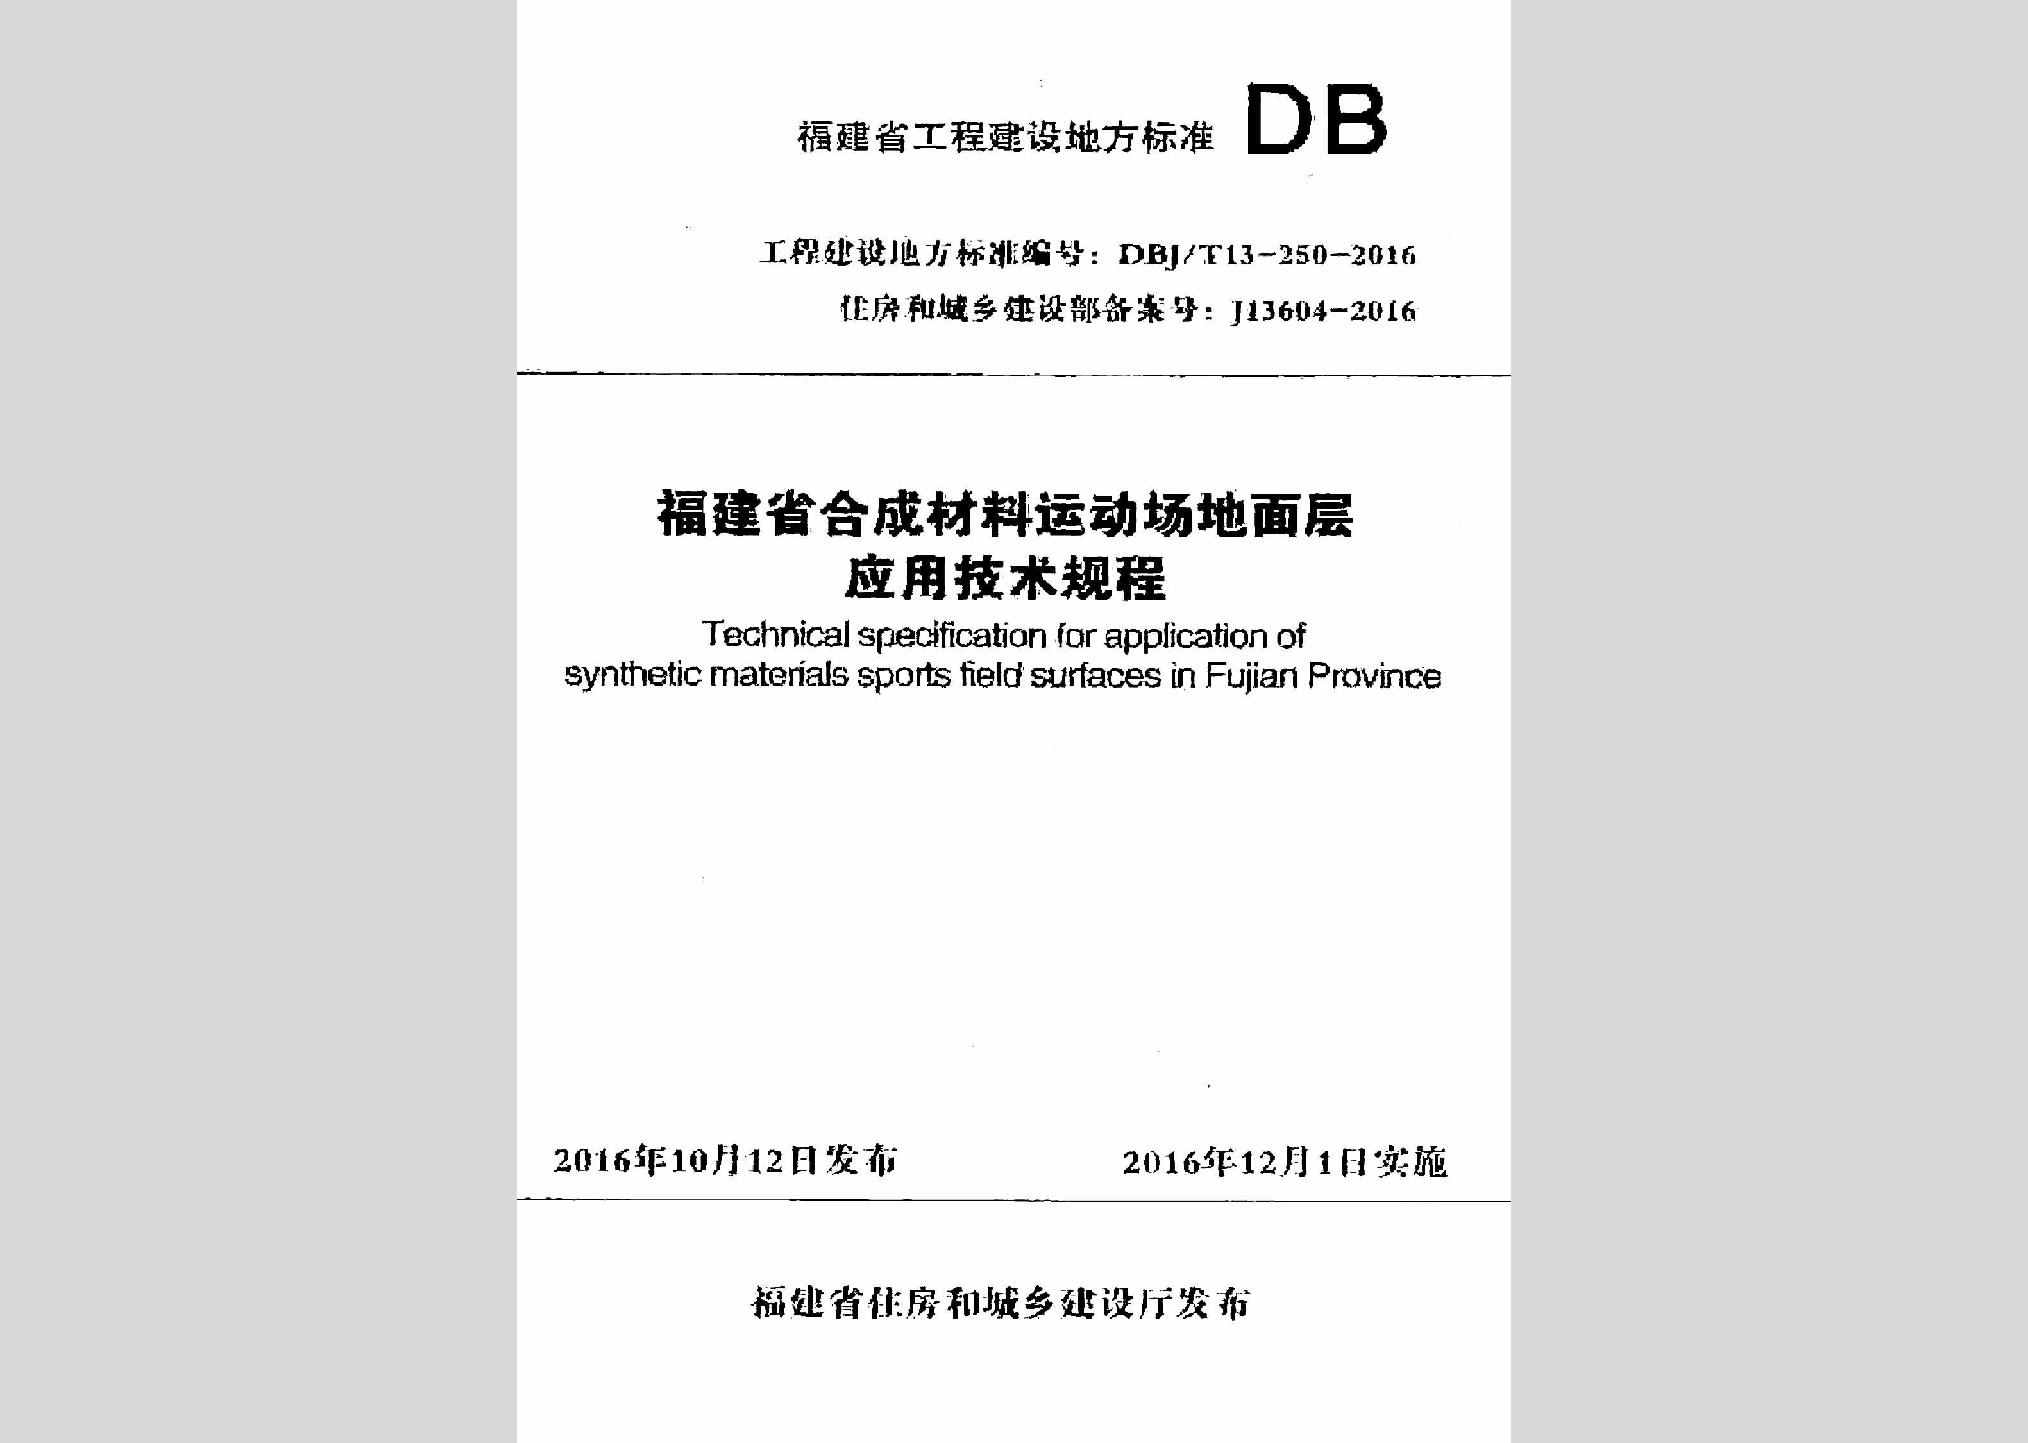 DBJ/T13-250-2016：福建省合成材料运动场地面层应用技术规程